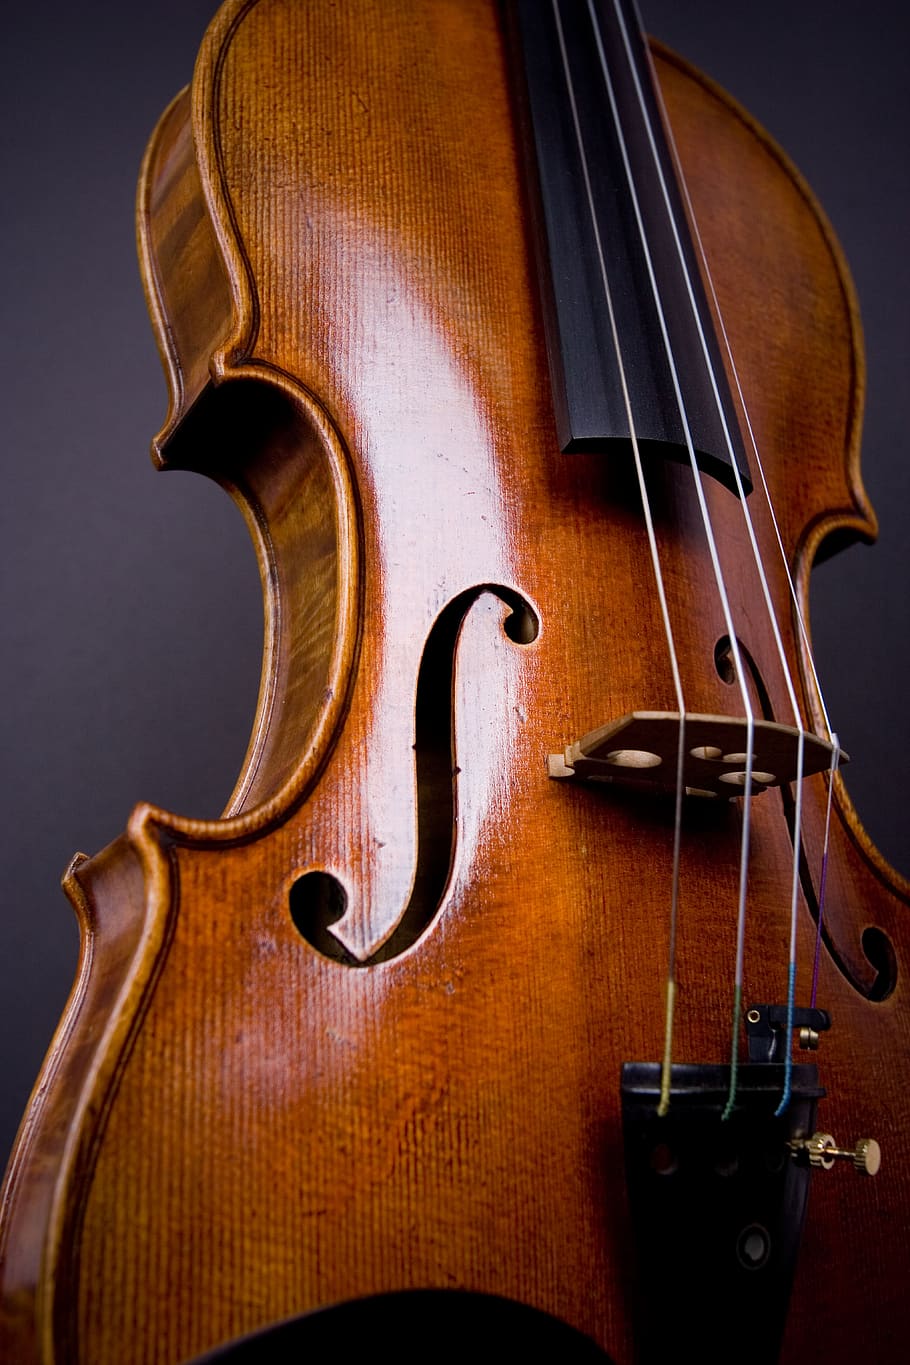 violín, viola, orquesta, violonchelo, clásico, instrumento, instrumento de cuerda, música, equipo musical, instrumento musical